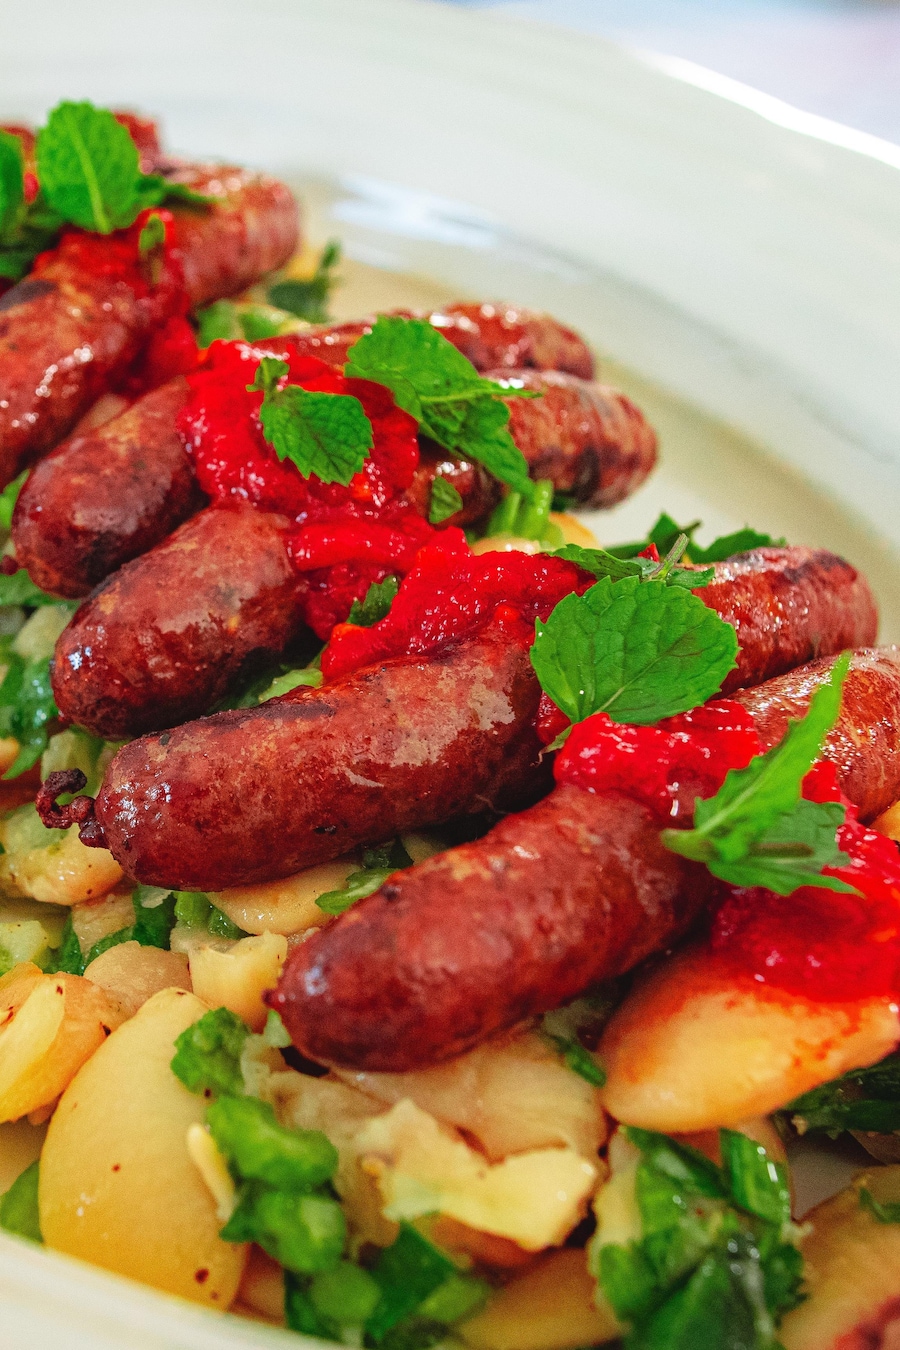 Des saucisses merguez grillées sur un lit de salade de haricots de Lima et céleri. Le tout est garni de harissa et de menthe ciselée.